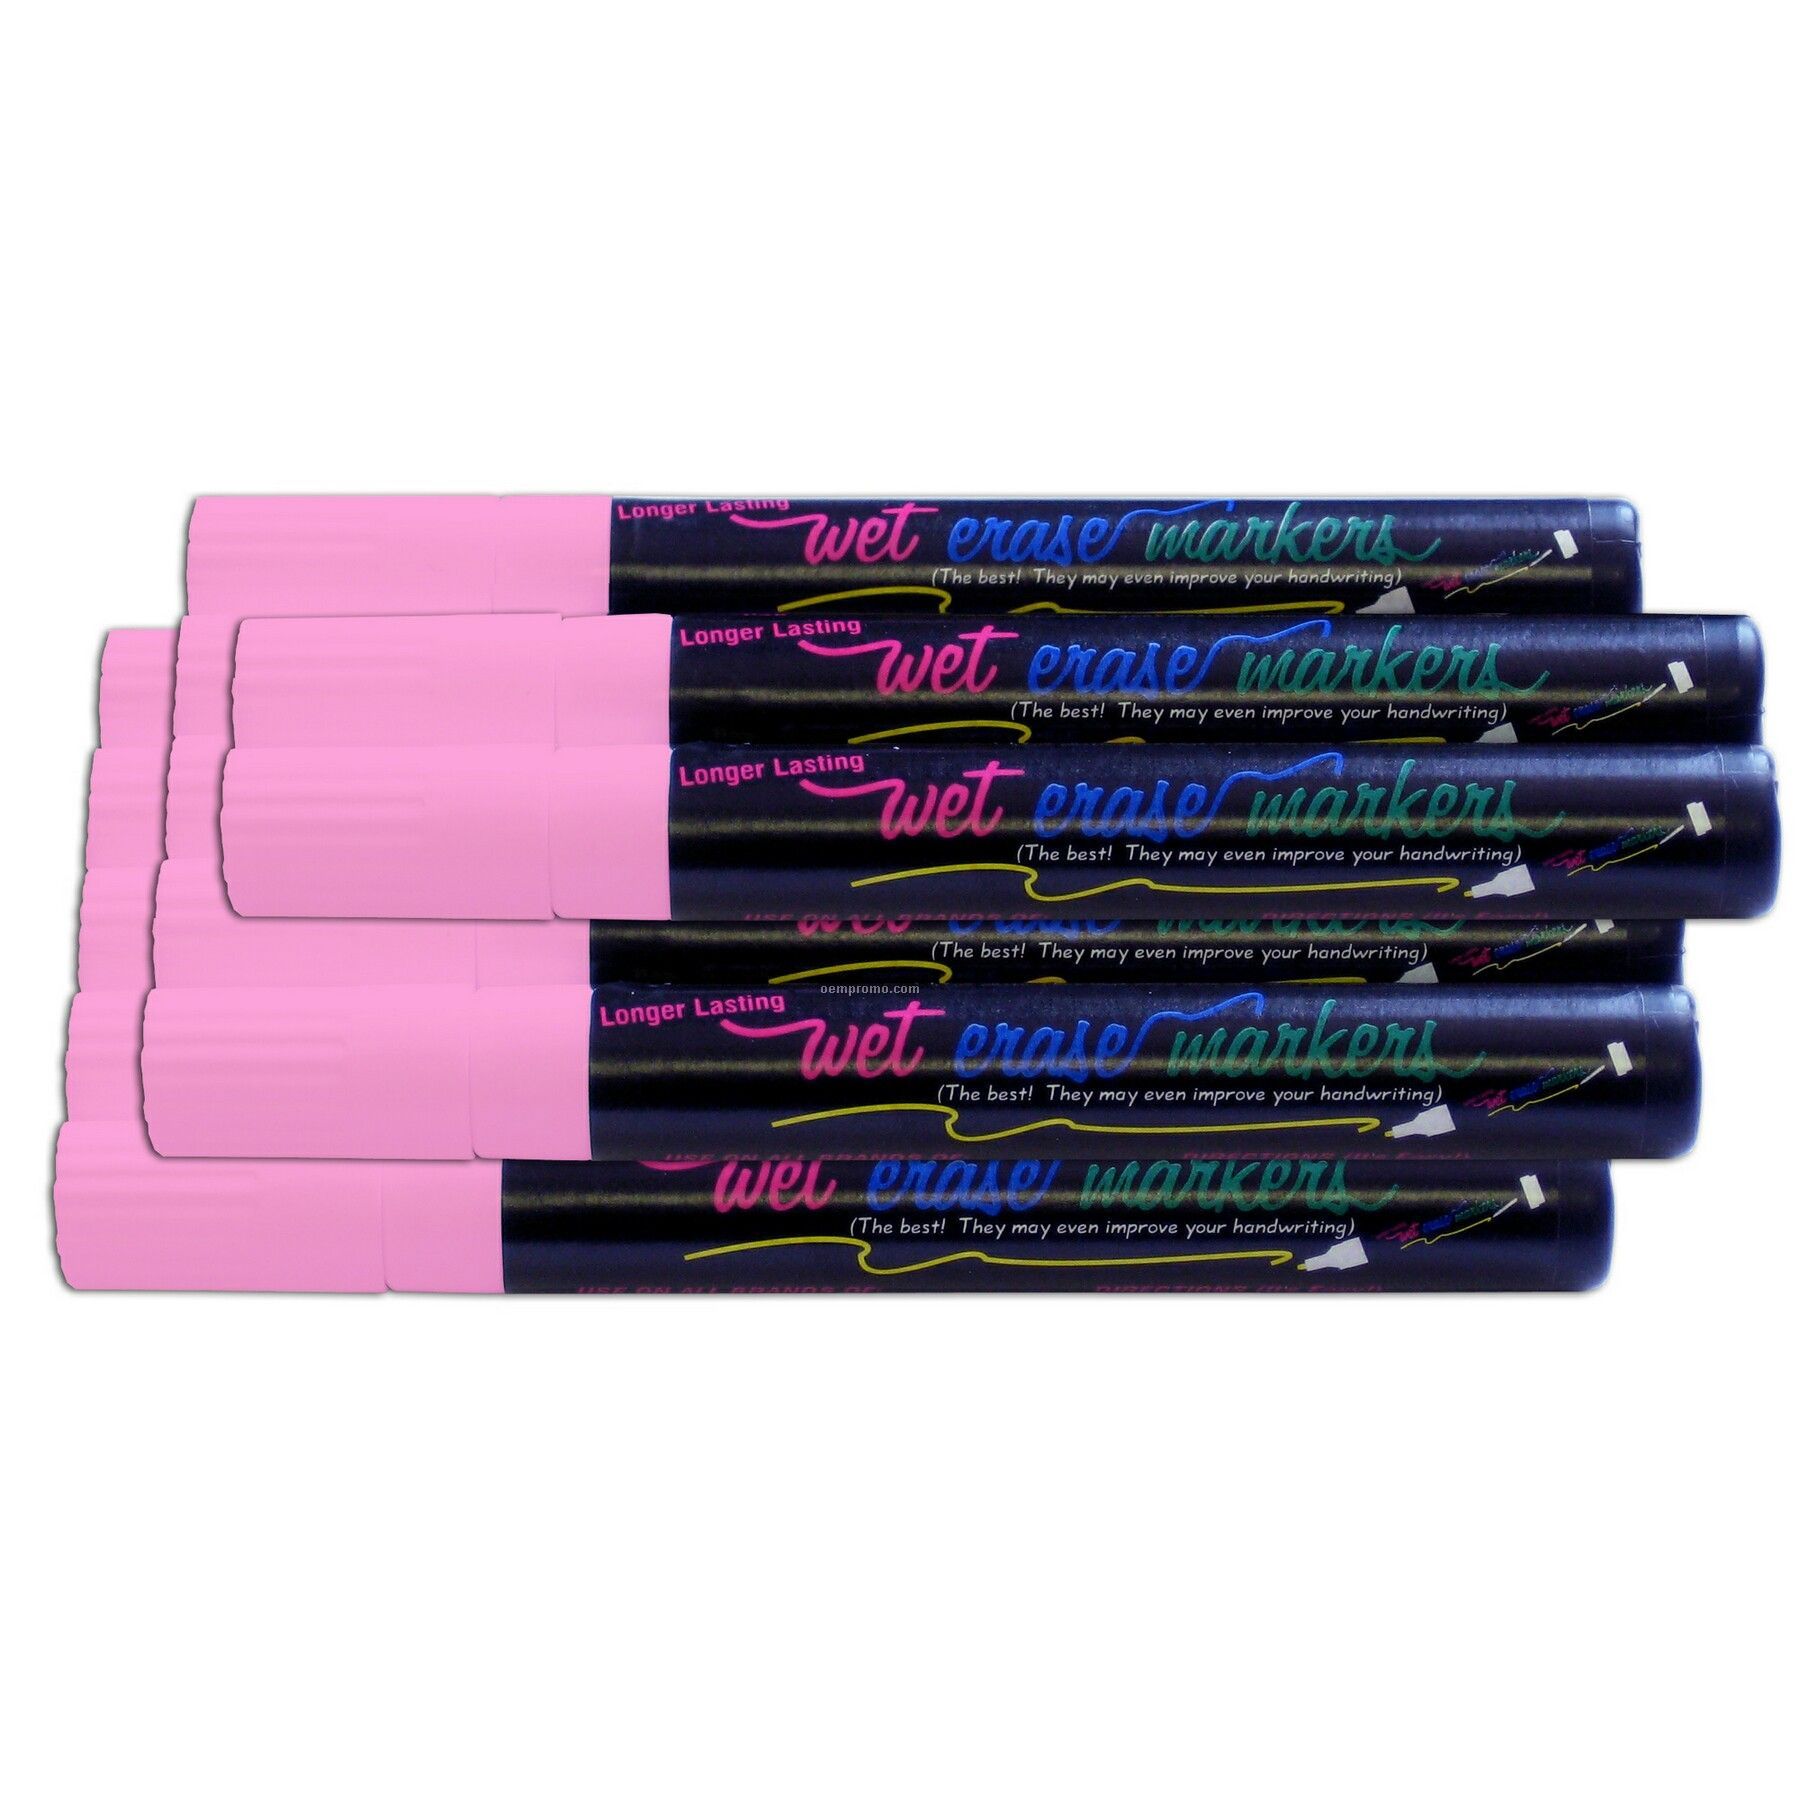 Wet Erase Marker Set - Pink (12 Pack)